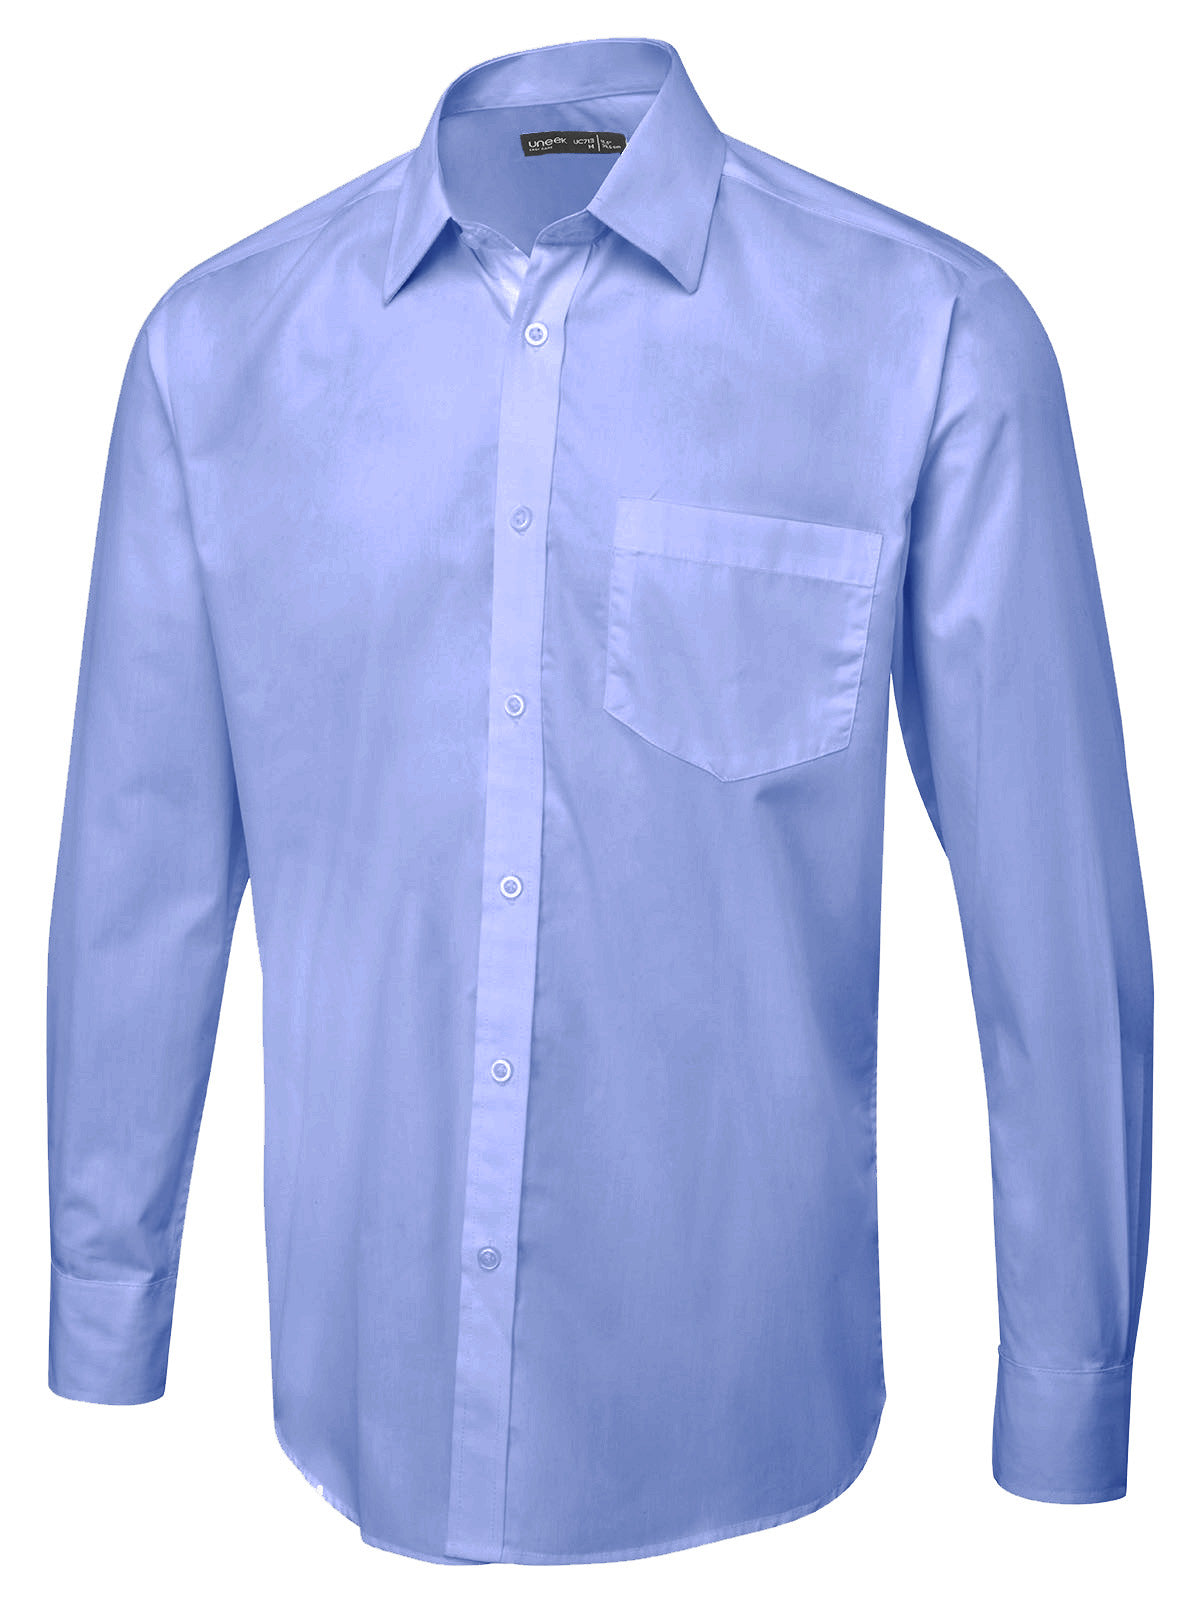 Uneek Men's Long Sleeve Poplin Shirt UC713 - Mid Blue